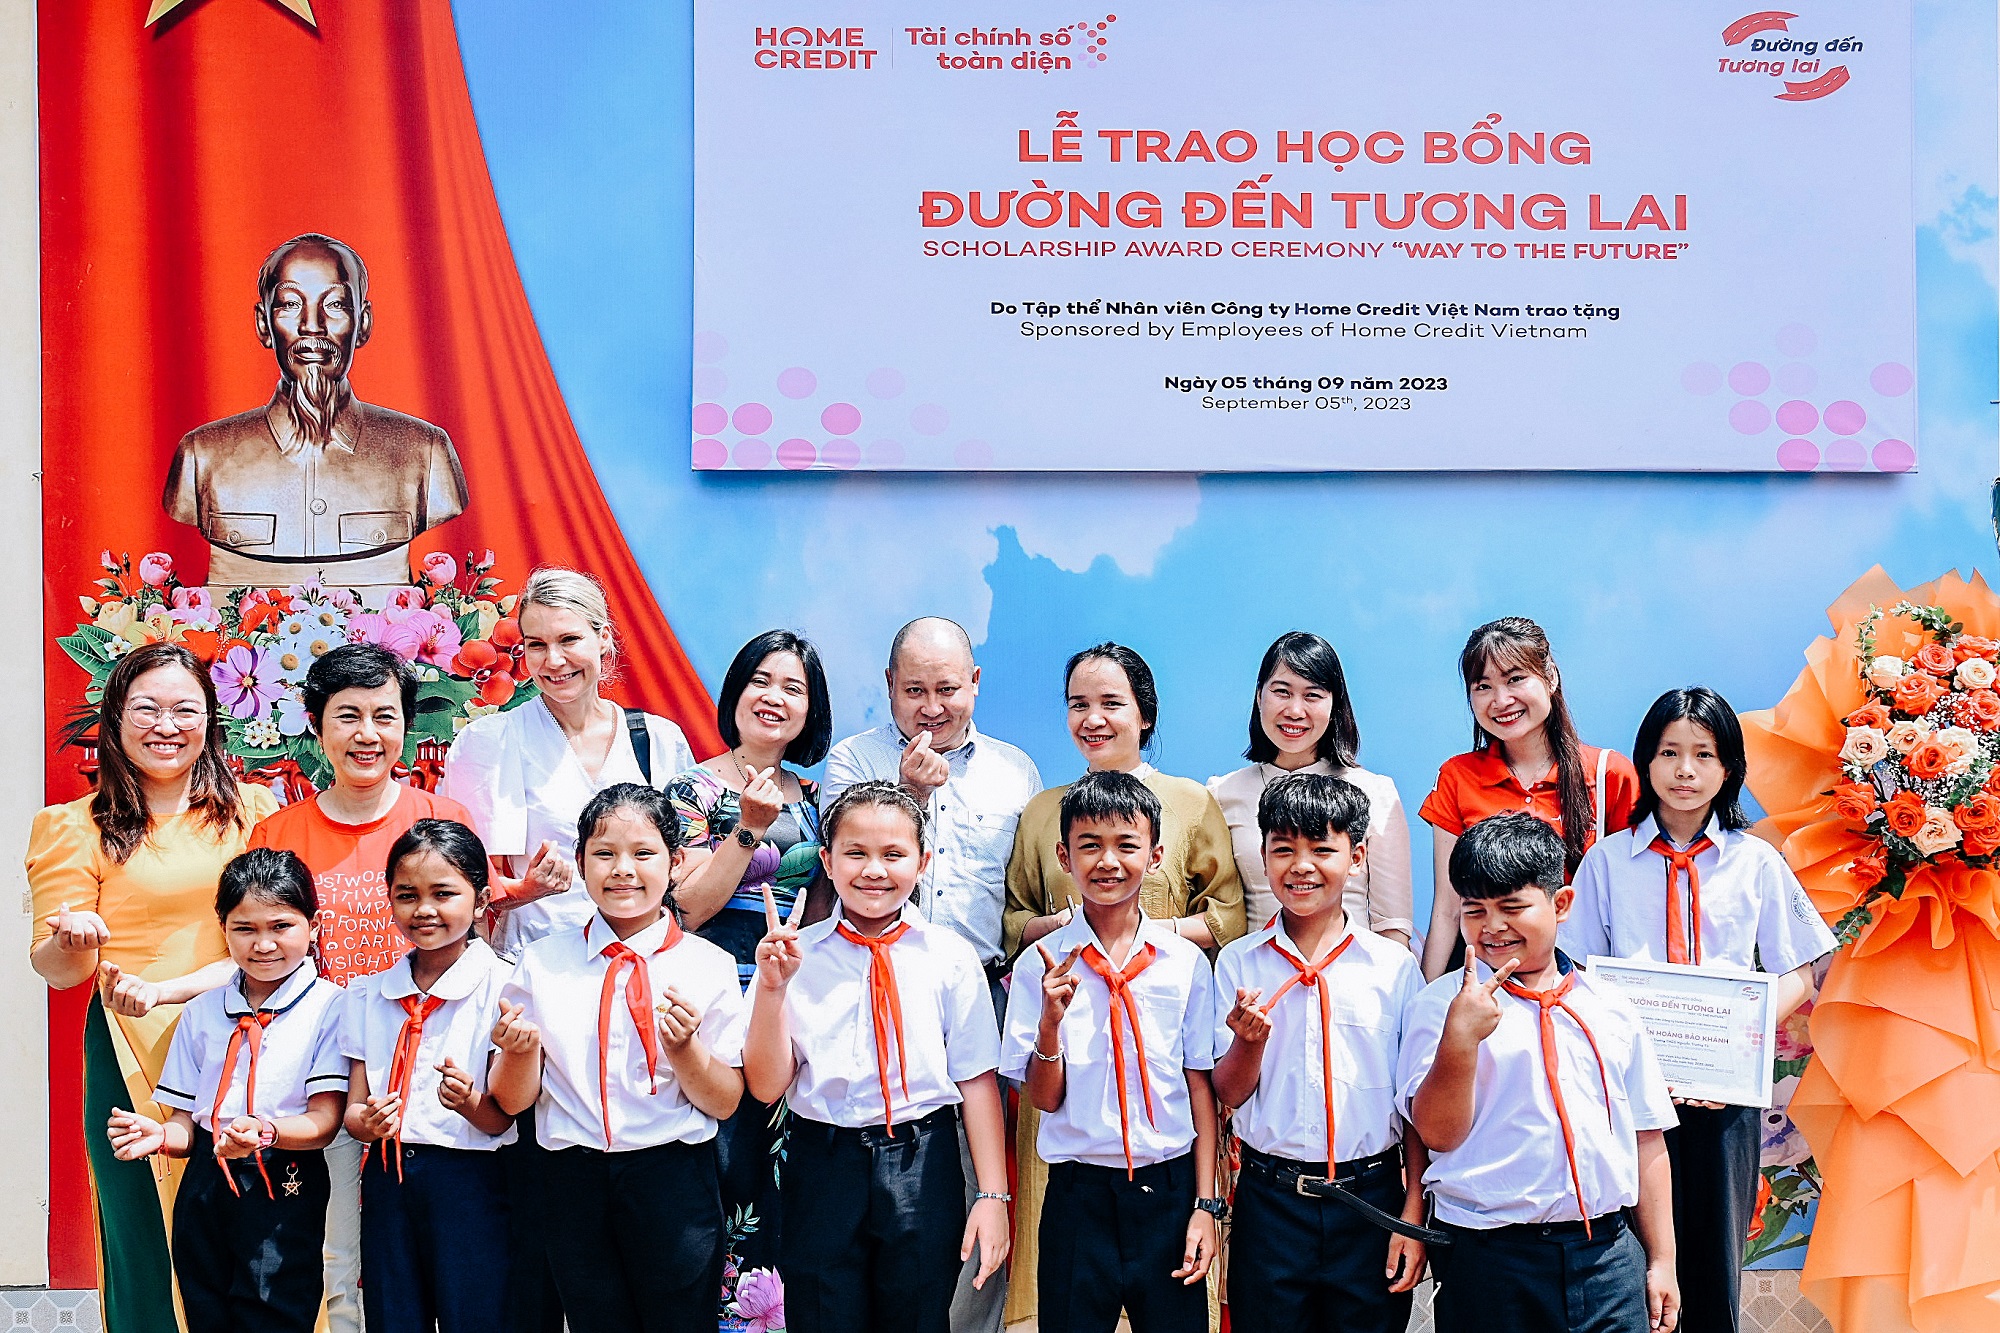 Tám suất học bổng đã được trao tặng cho các em học sinh nghèo thị xã Buôn Hồ, Đắk Lắk.